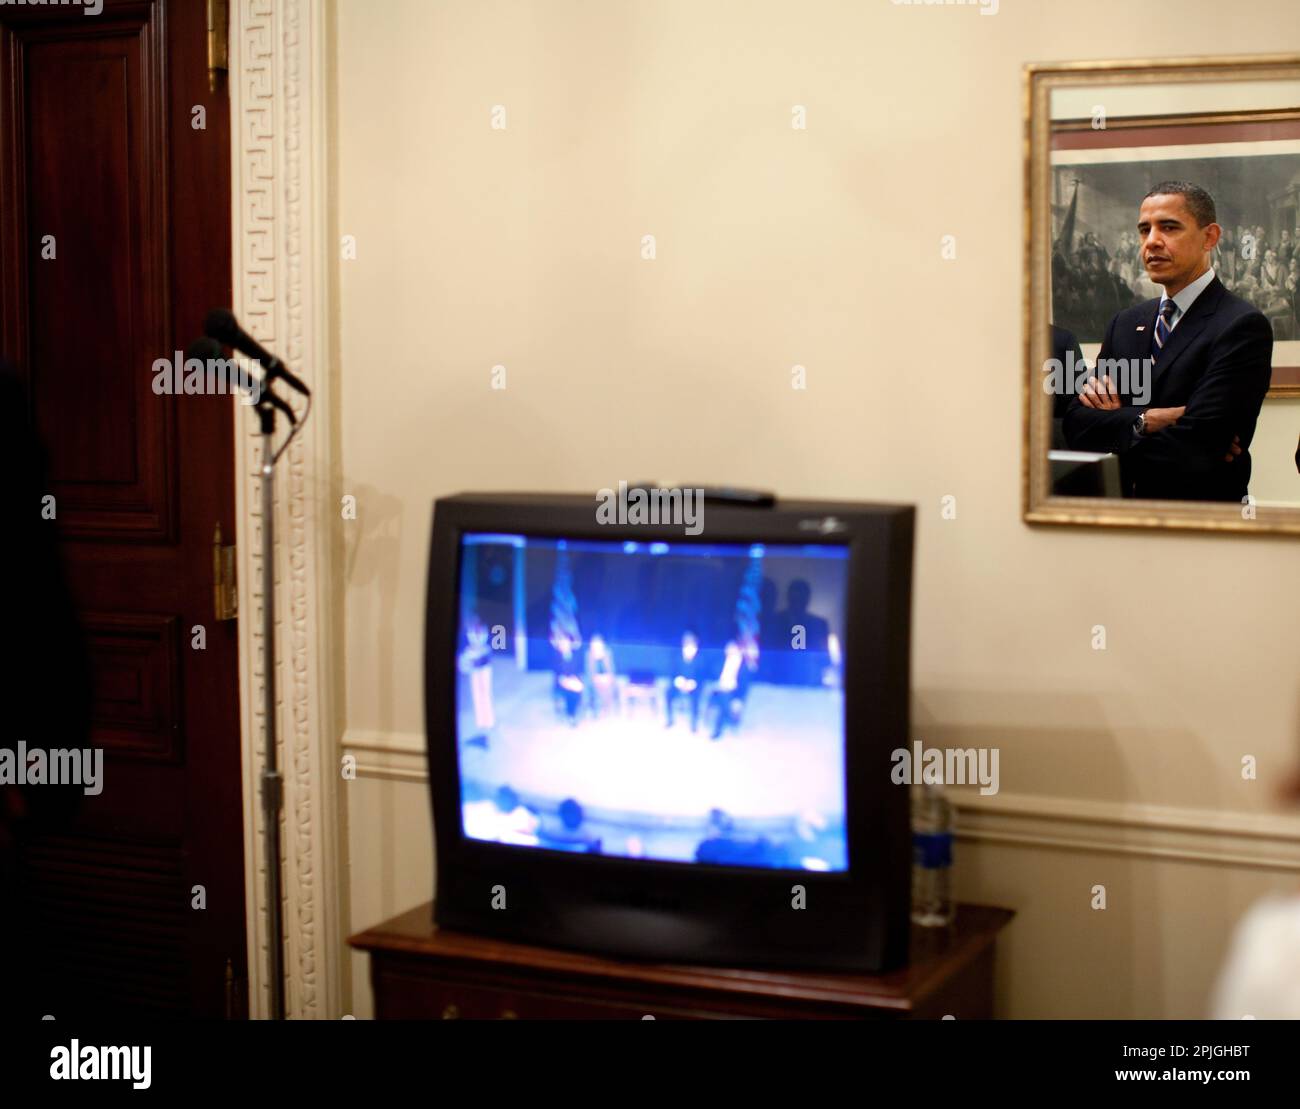 Us-Präsident Barack Obama ist in einem Spiegel wie er backstage vor für Erläuterungen zu einem Latino Town Hall Meeting auf der H1N1 Schweinegrippe Virus 8. Mai 2009 eingeführt, wartet. Offizielle Weiße Haus Foto von Pete Souza. Stockfoto